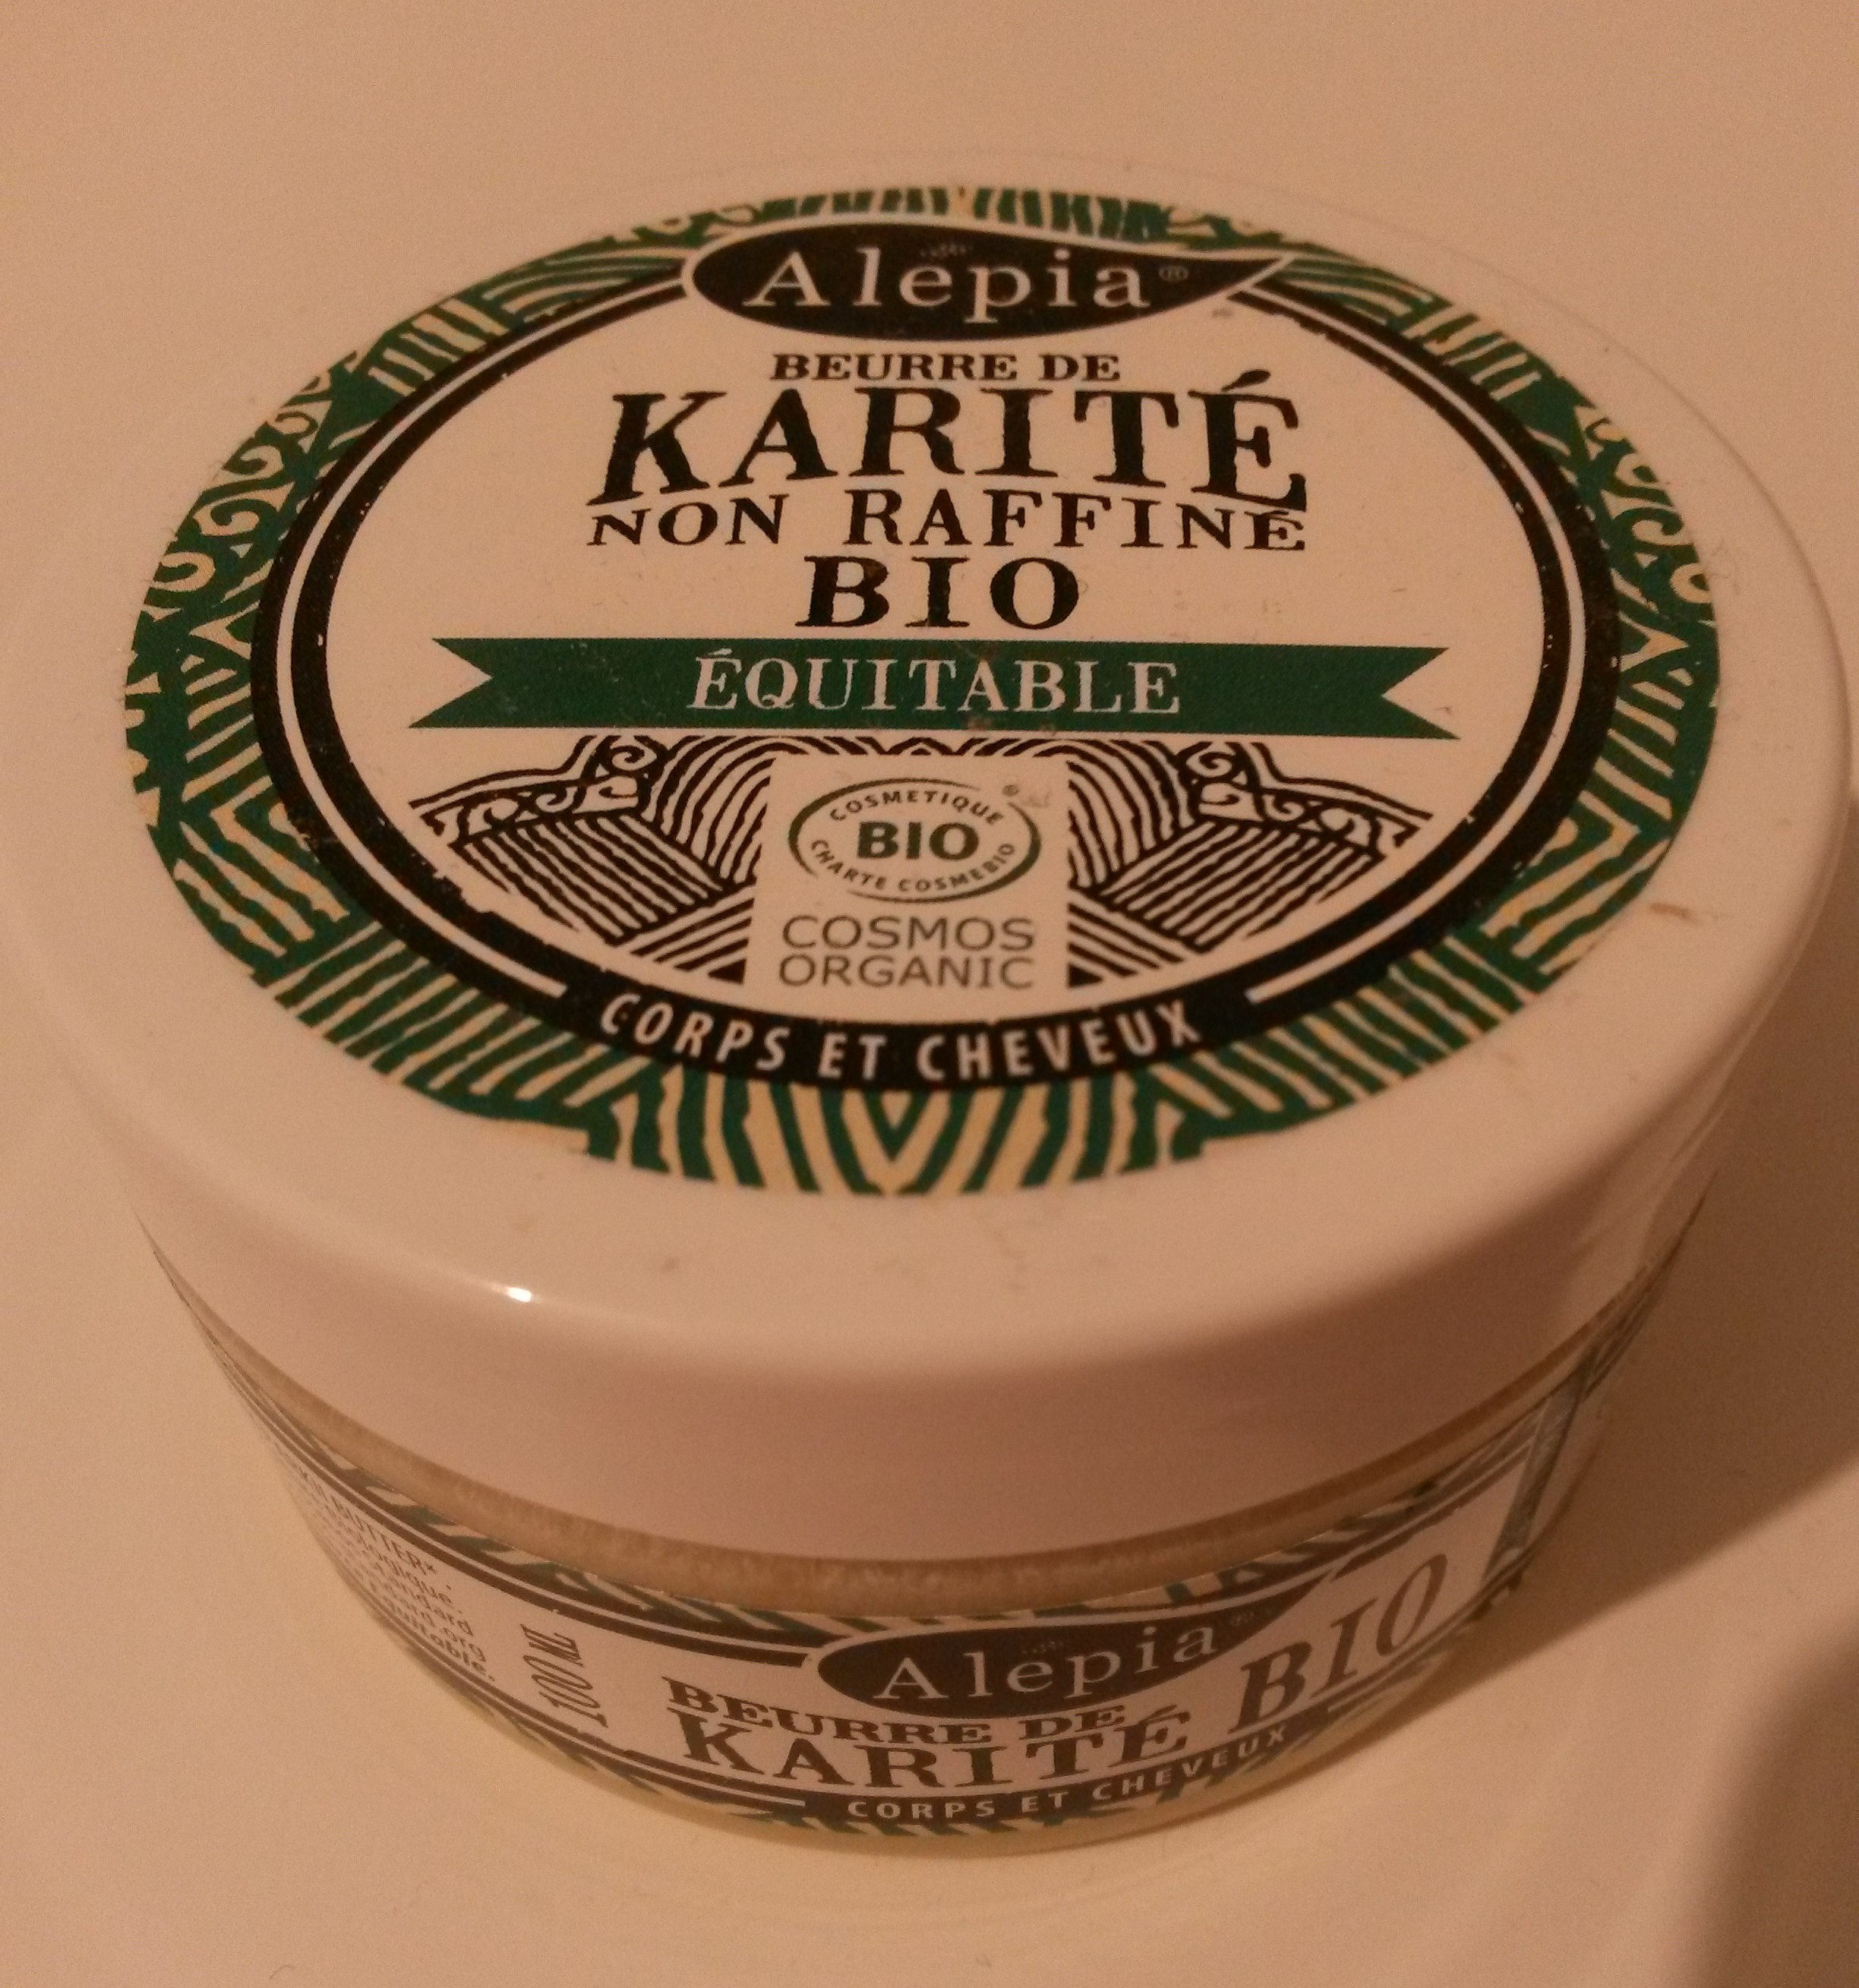 Beurre de karité - non raffiné, bio, équitable - Tuote - fr